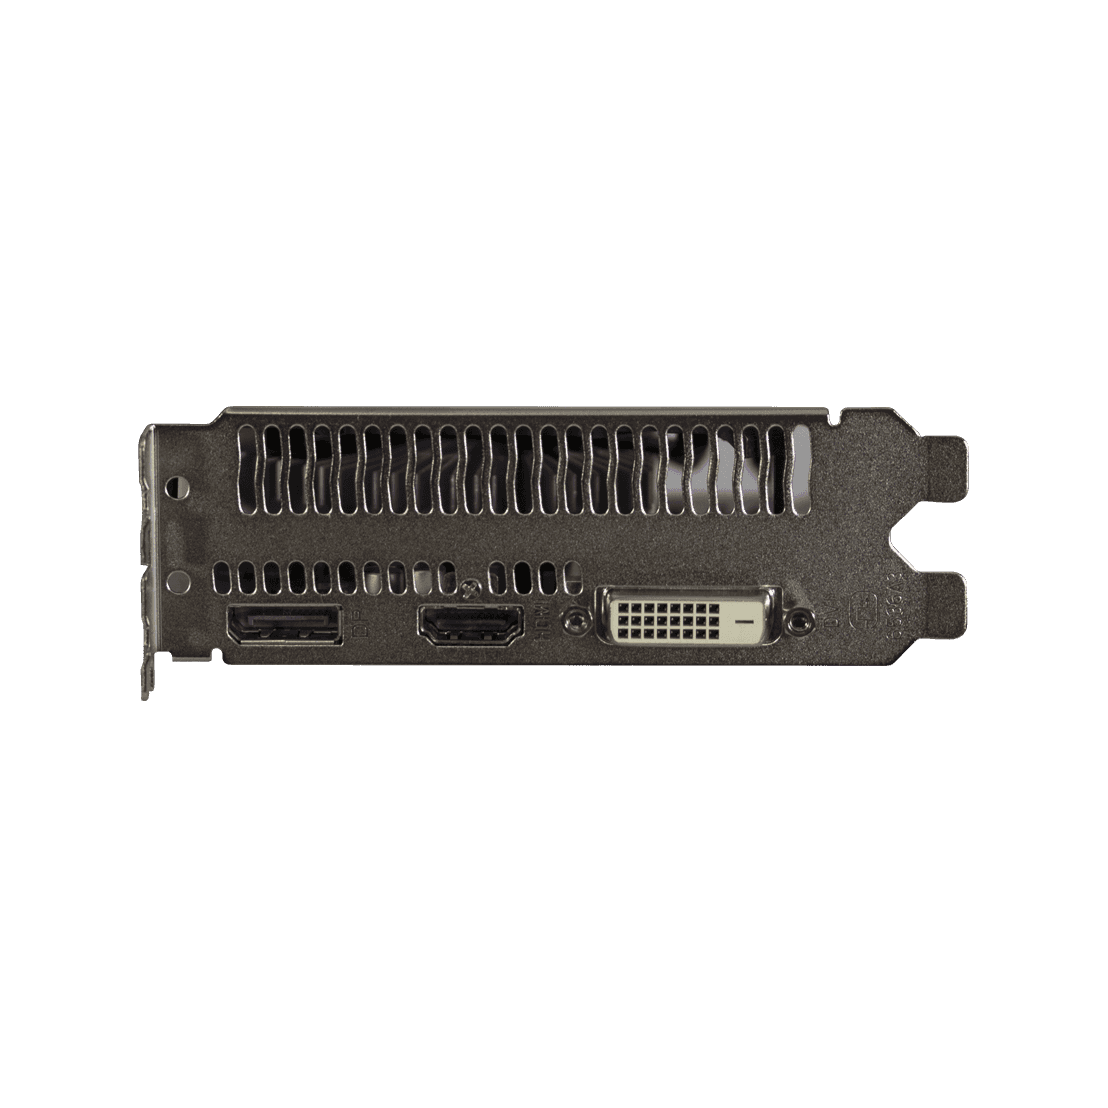 Radeon RX 550搭載 グラフィックボード (PCI-Express) | 玄人志向